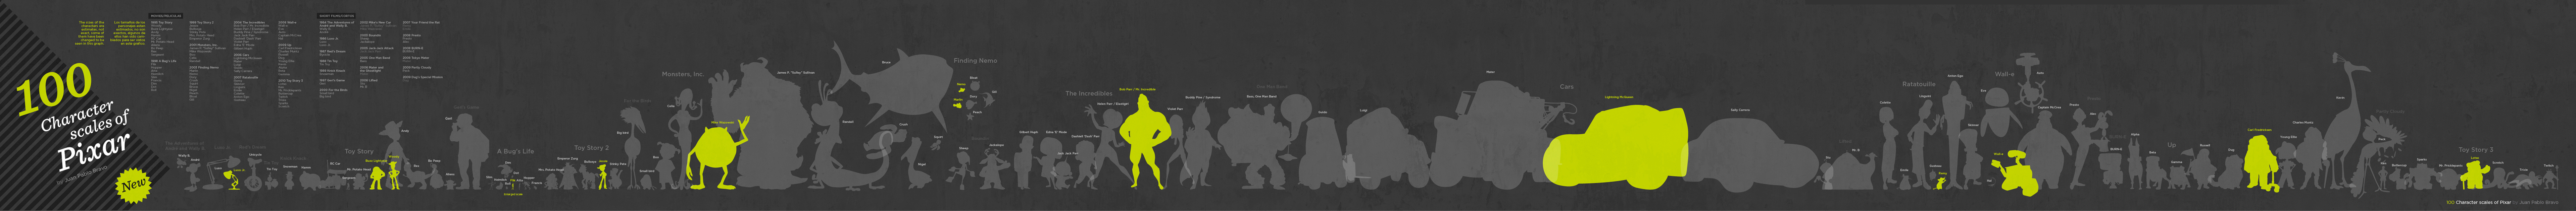 100 personnages de Pixar dessinés à l’échelle